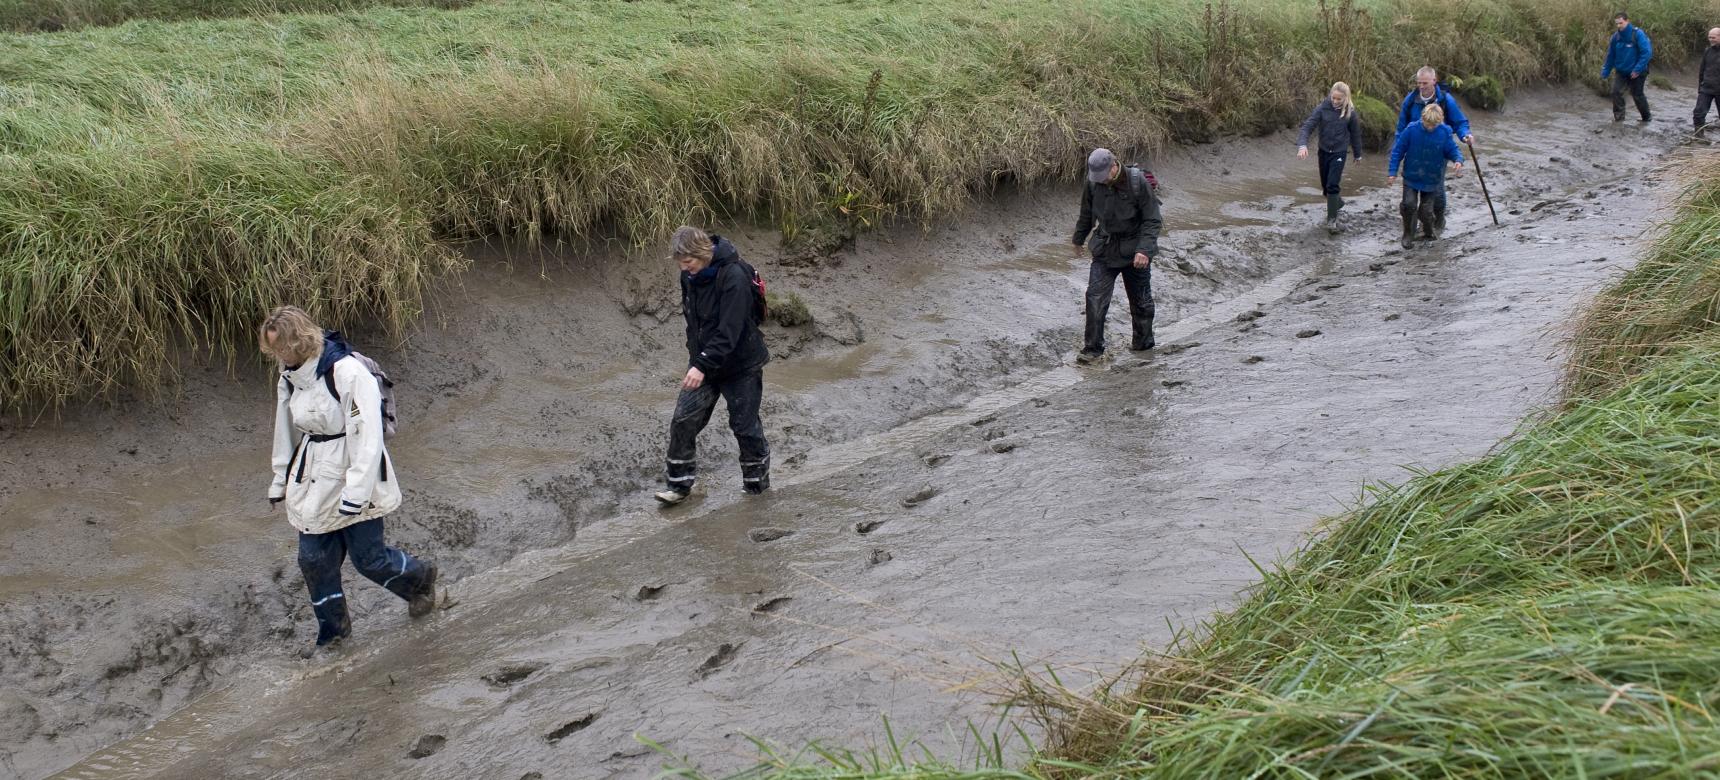 Bezoekers in de modder tijdens een excursie in het Verdronken Land van Saeftinghe (Beeldbank Laat Zeeland Zien - Felice Buonadonna)